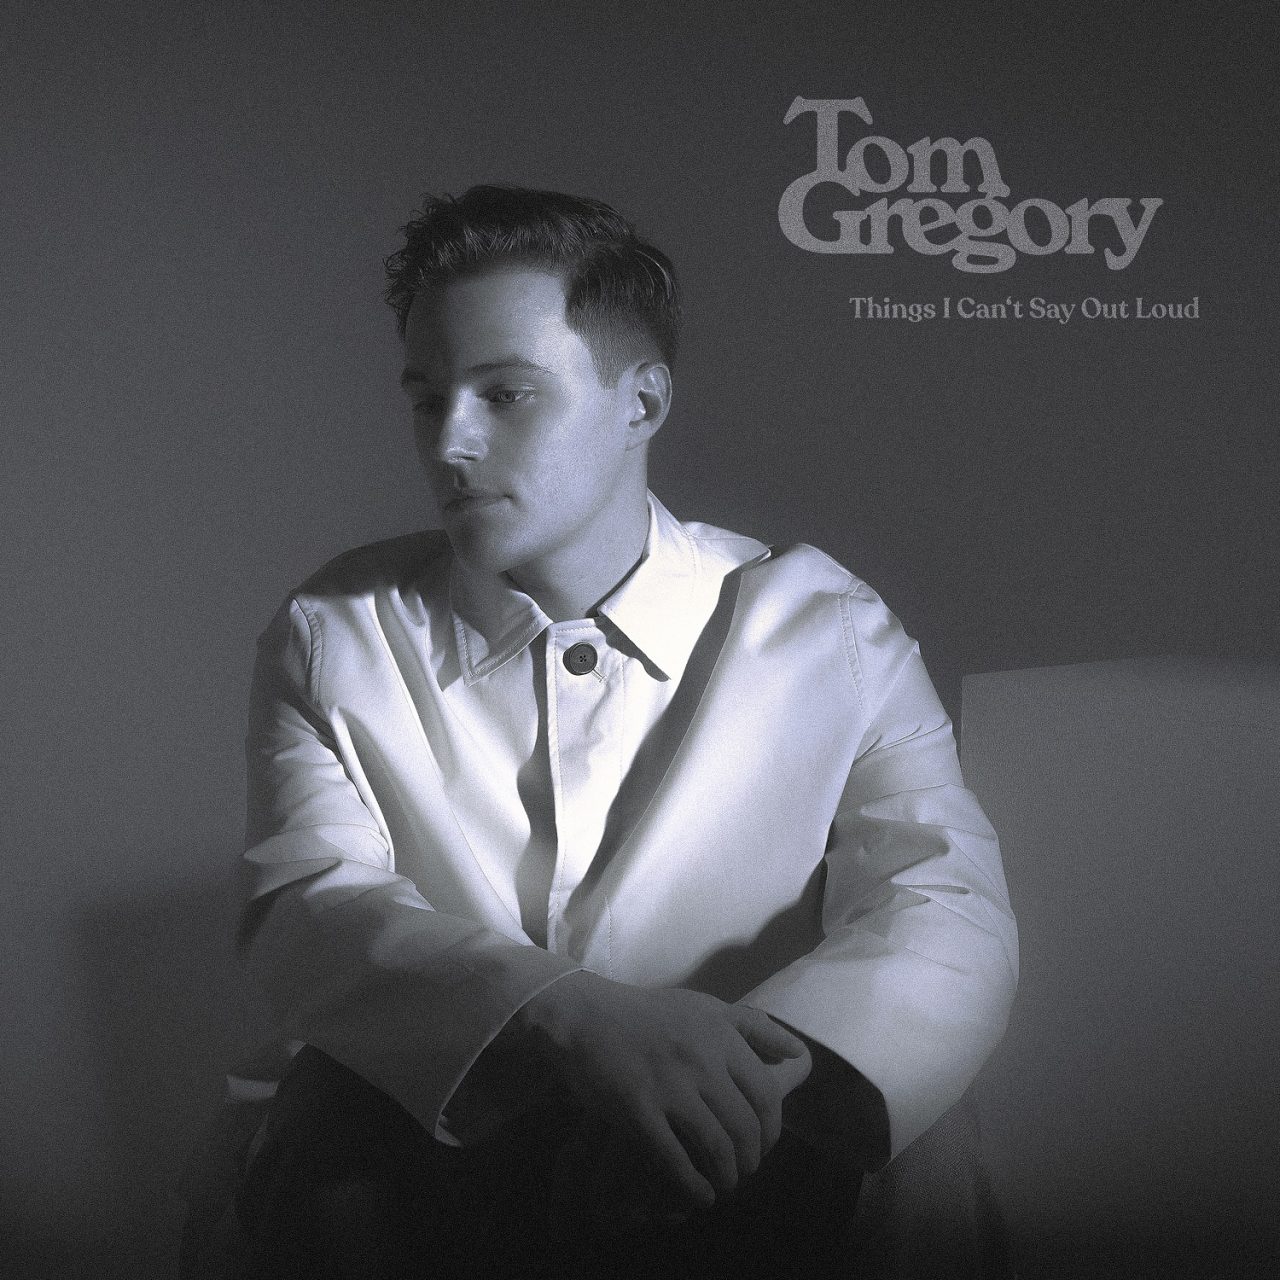 Das Albumcover "Things I Can't Say Out Loud" von Tom Gregory ist schwarz-weiß. Es zeigt den Musiker, wie er da sitzt und nachdenklich in die Ferne schaut.